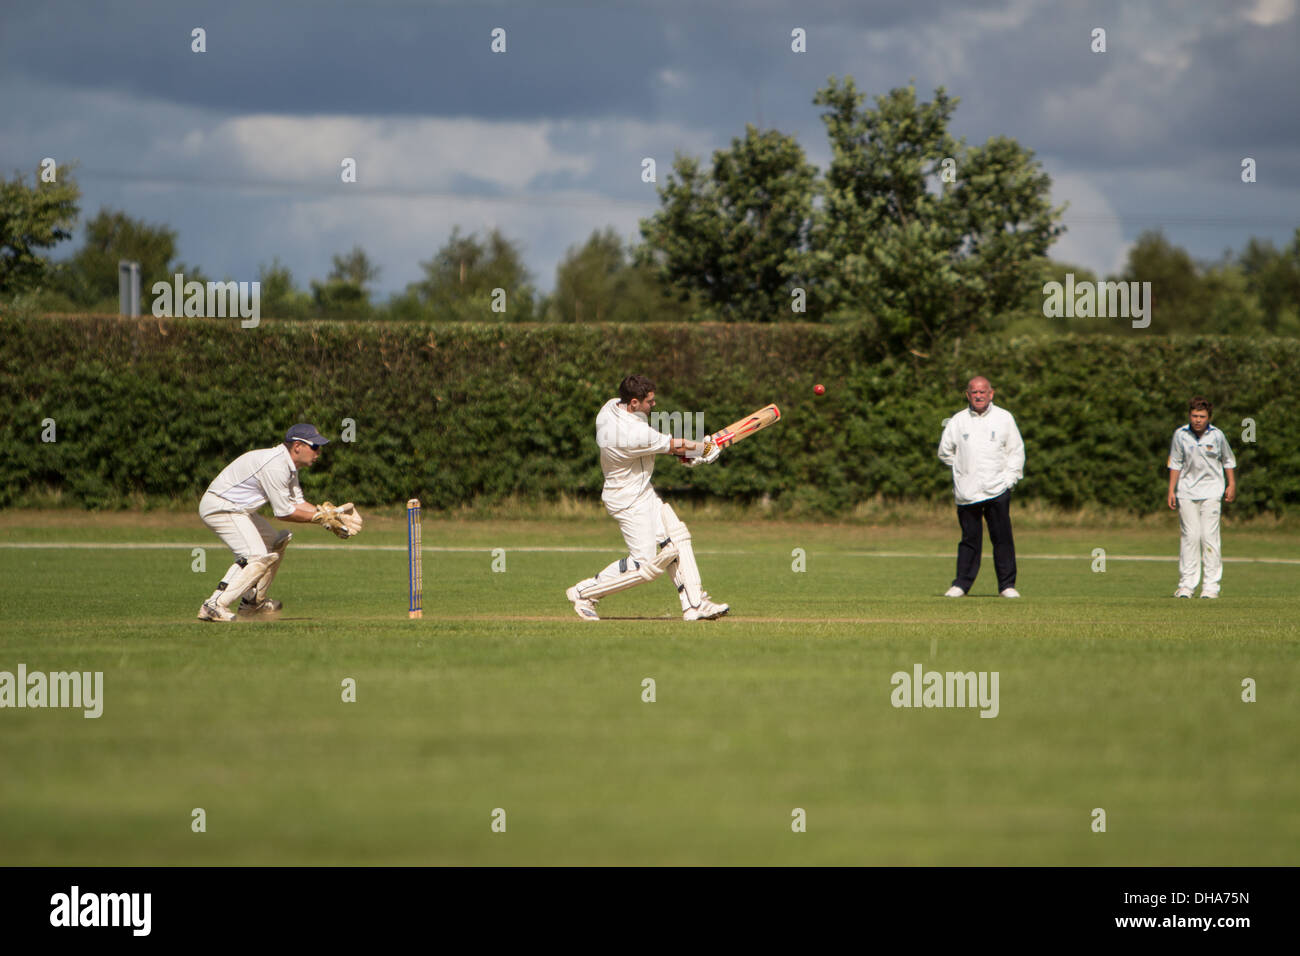 Aldea cricket. El bateador tira la pelota cuadrados del wicket con el wicketkeeper esperando a saltar mientras un fielder y un Foto de stock